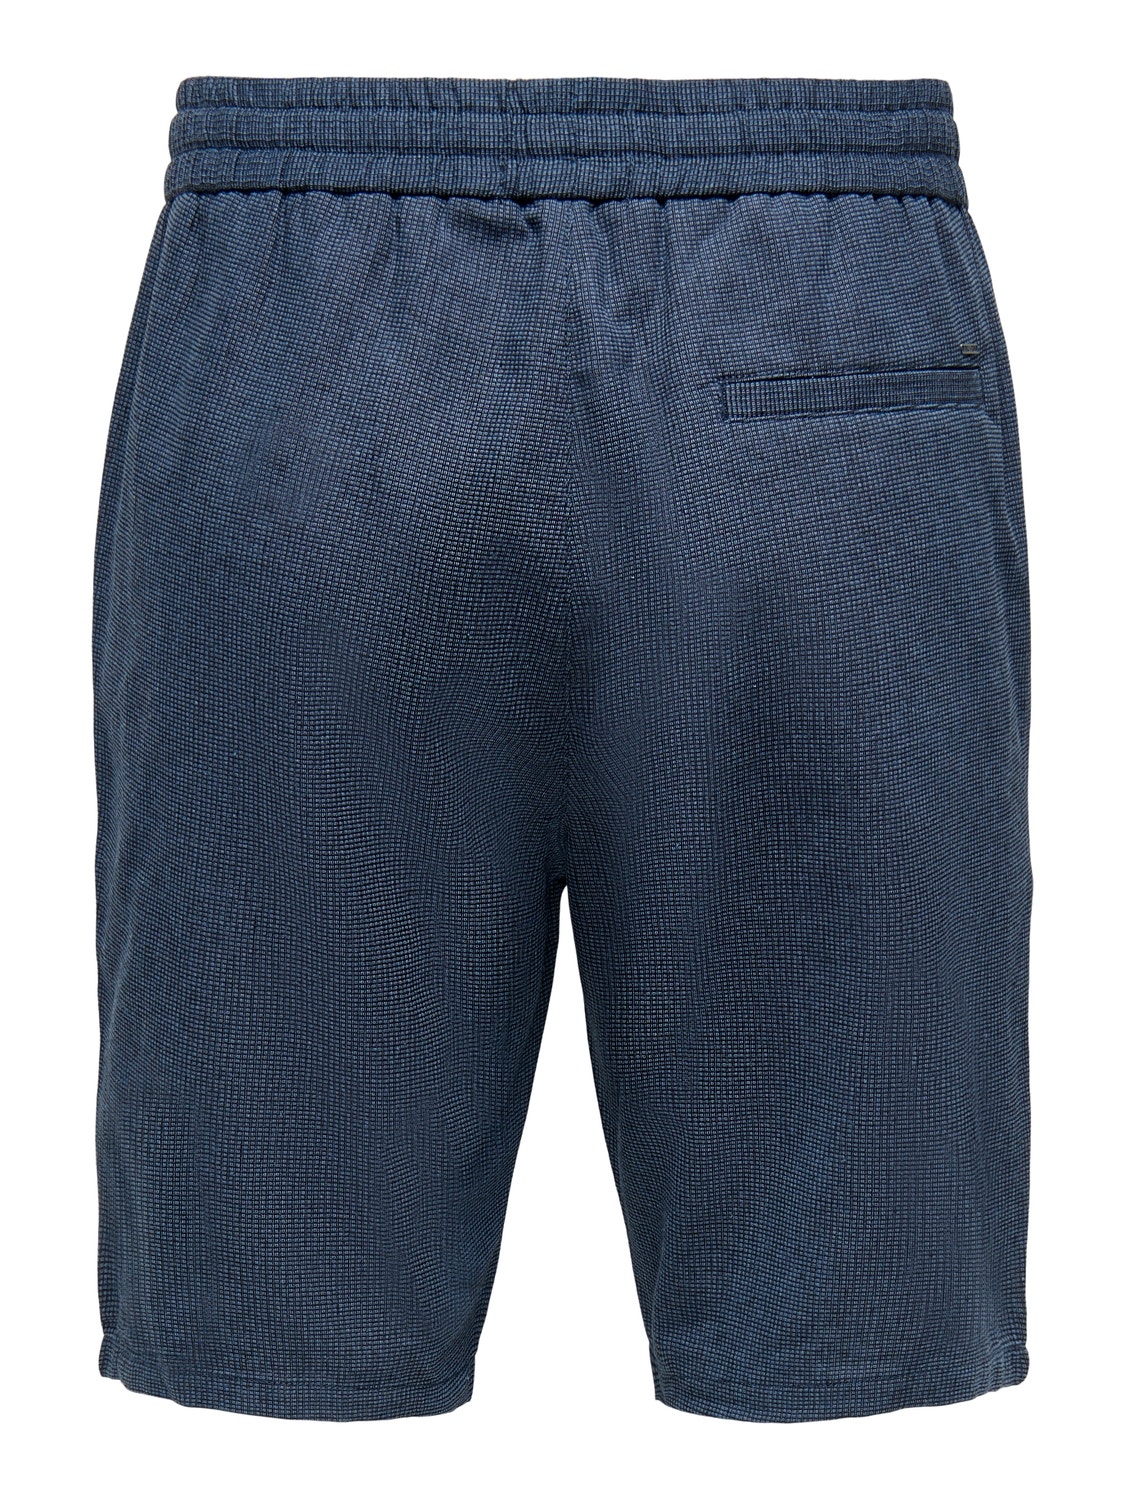 ONLY & SONS Verjüngt Mittlere Taille Shorts -Dark Navy - 22022524